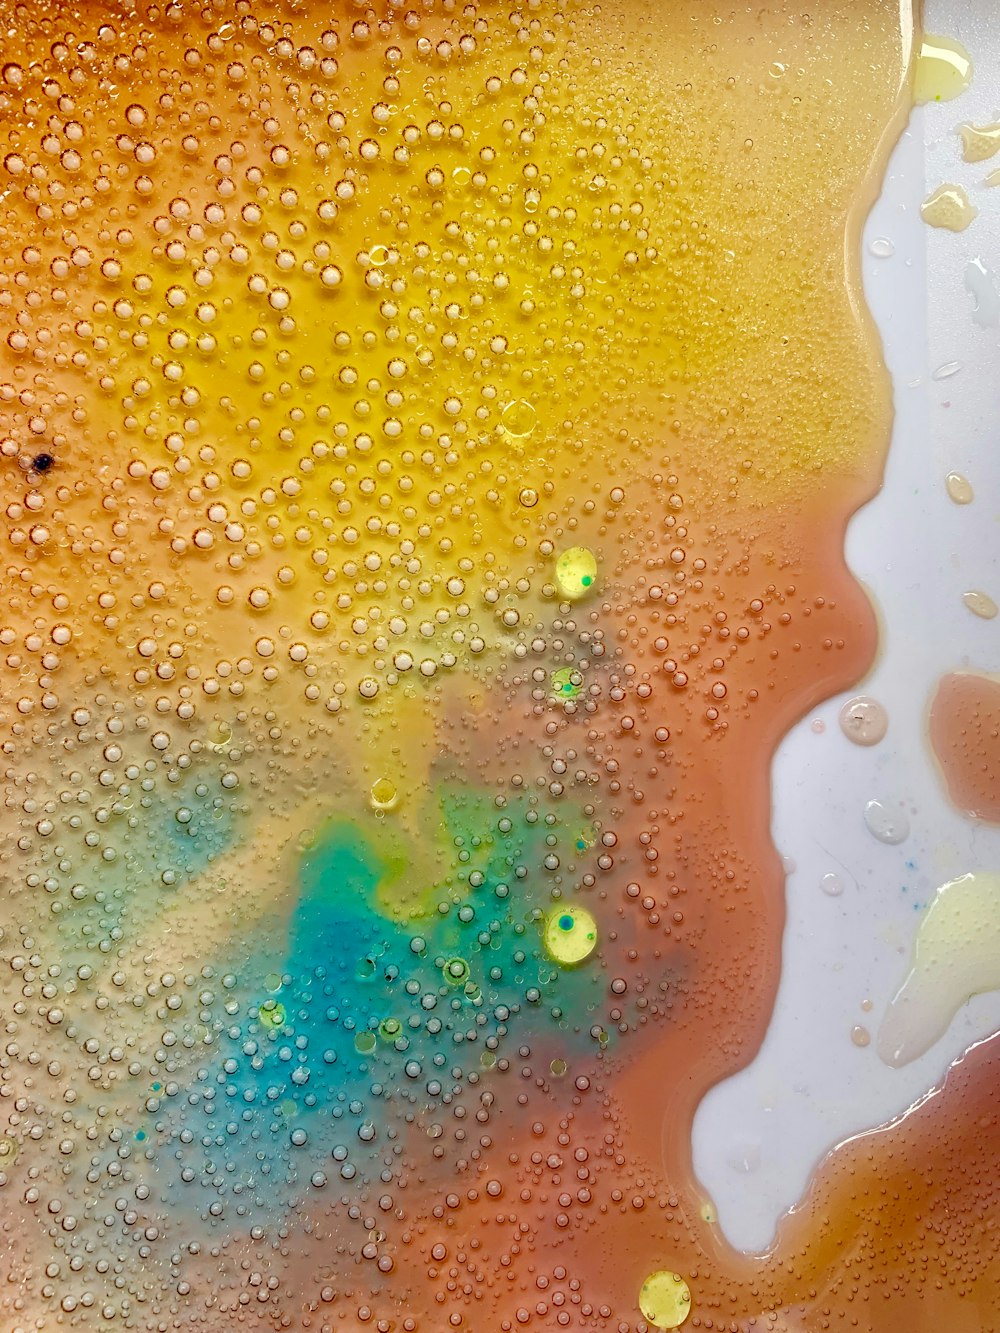 multicolored spilled liquid